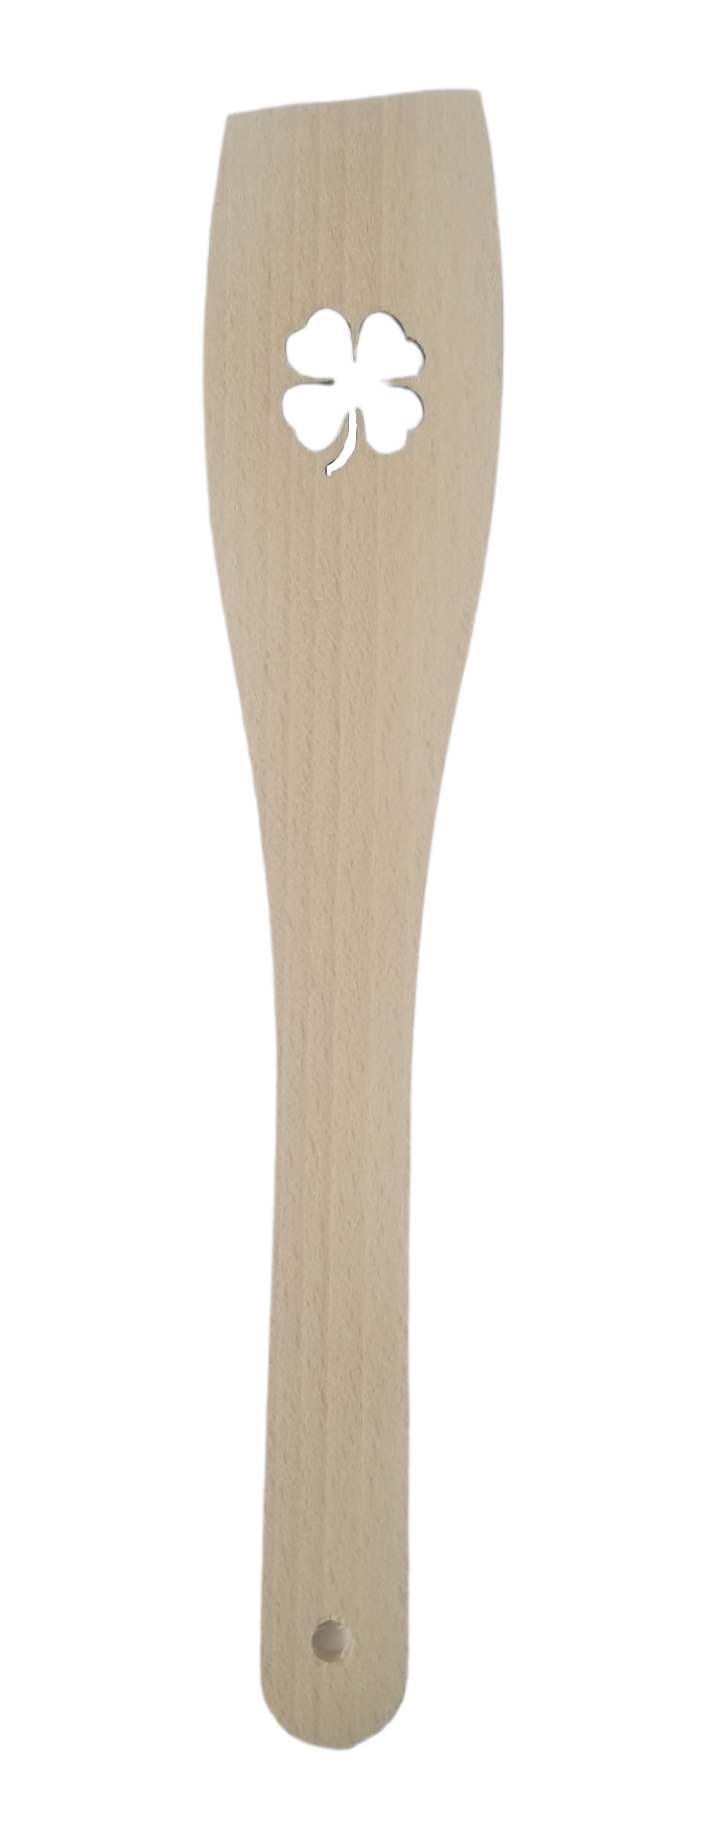 Obracečka dřevěná s motivem 30x6cm - Čtyřlístek (12ks/bal)